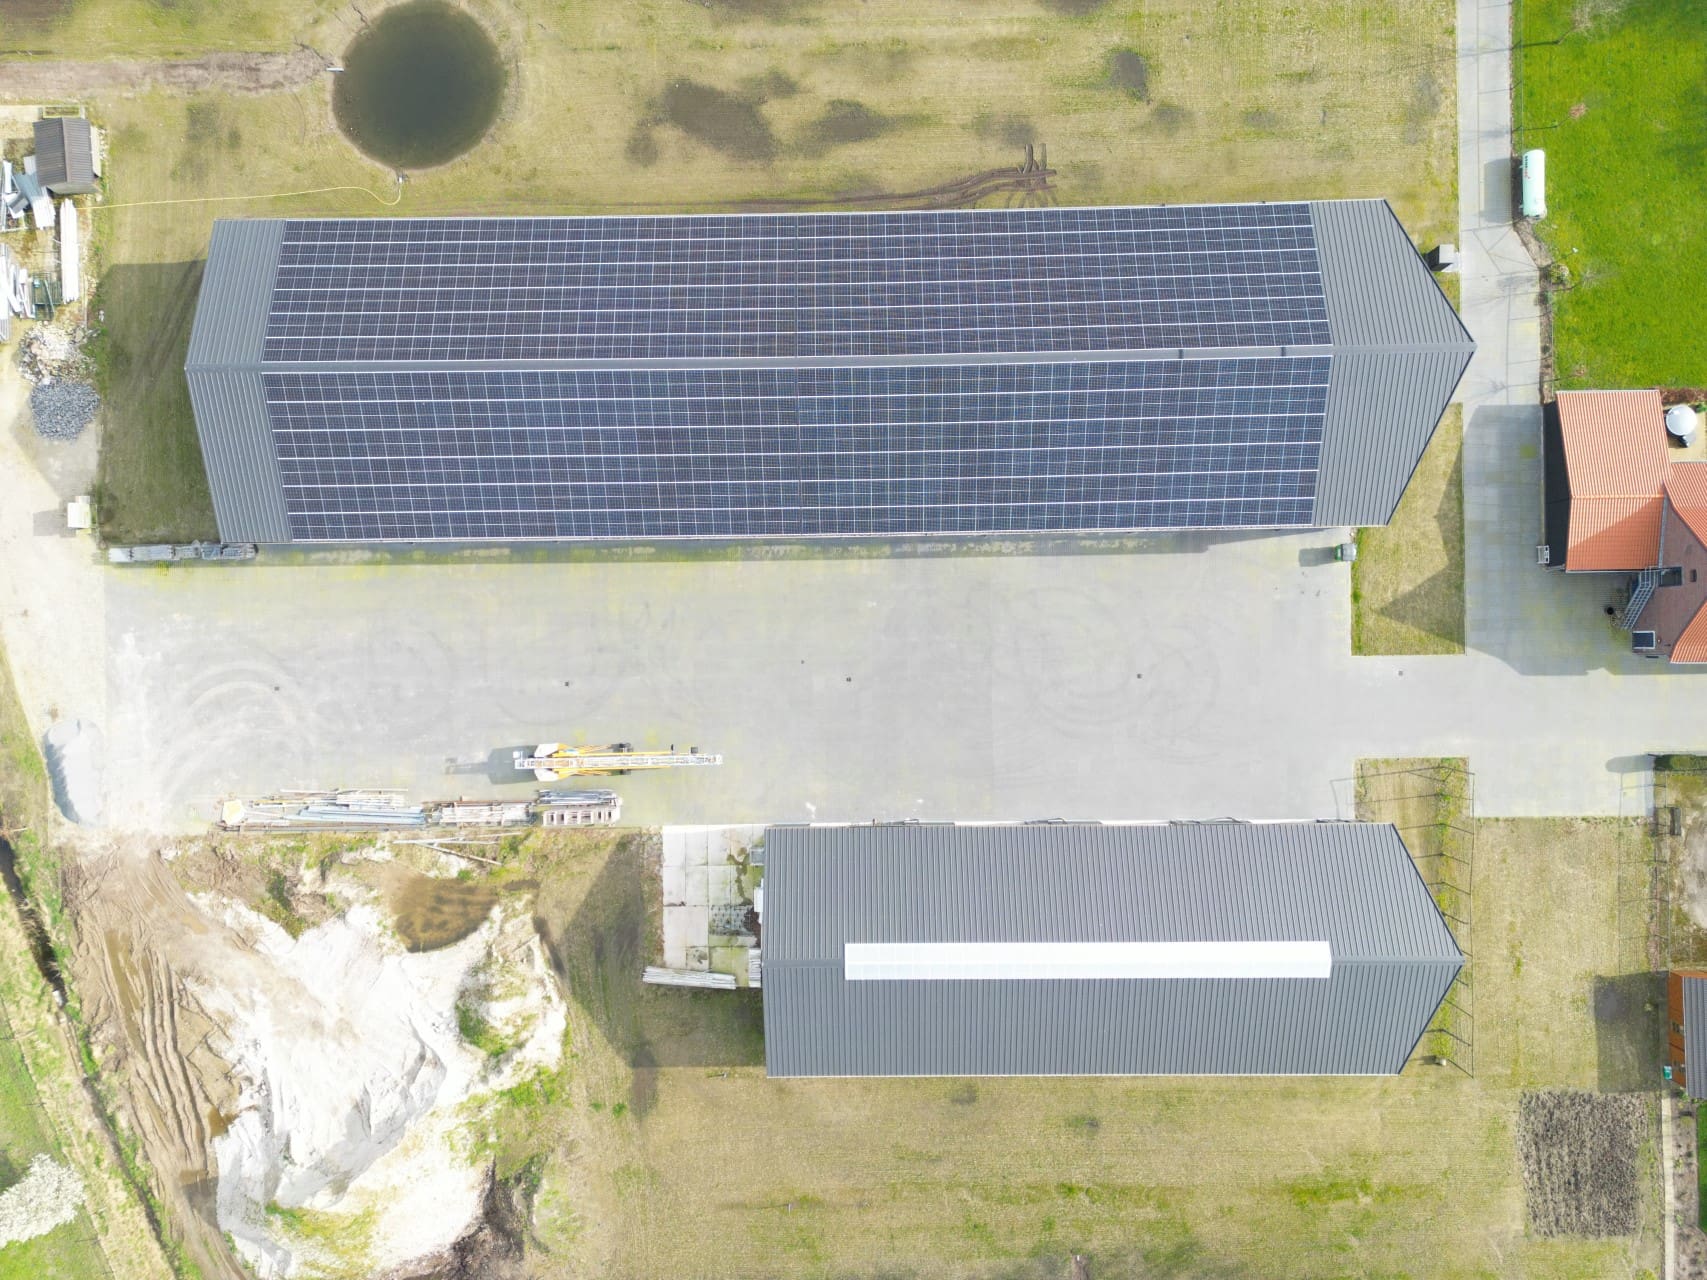 Bovenzijde bedrijfsverzamelgebouw met zonnepanelen